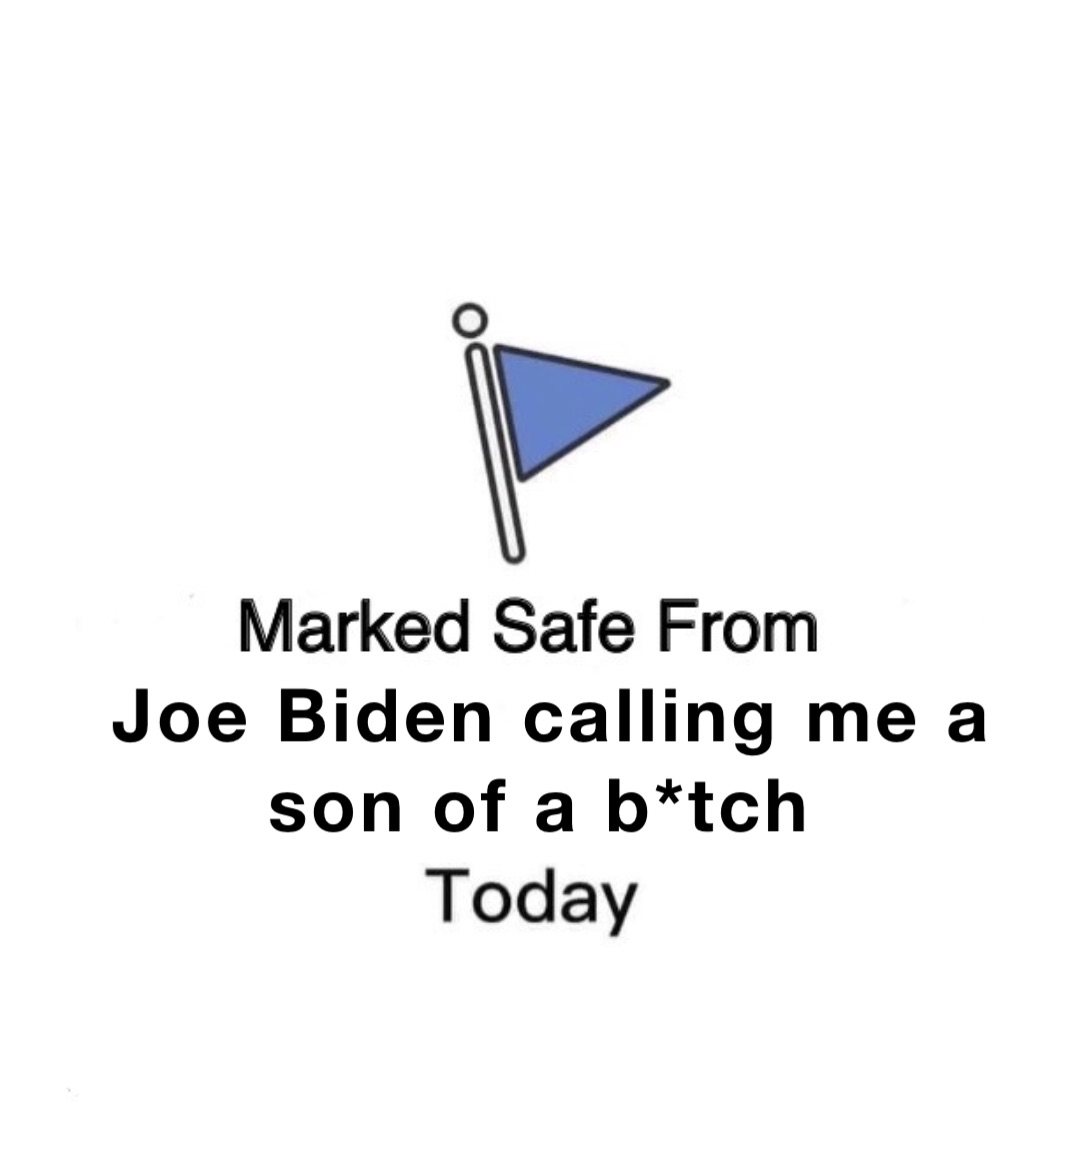 Joe Biden calling me a son of a b*tch